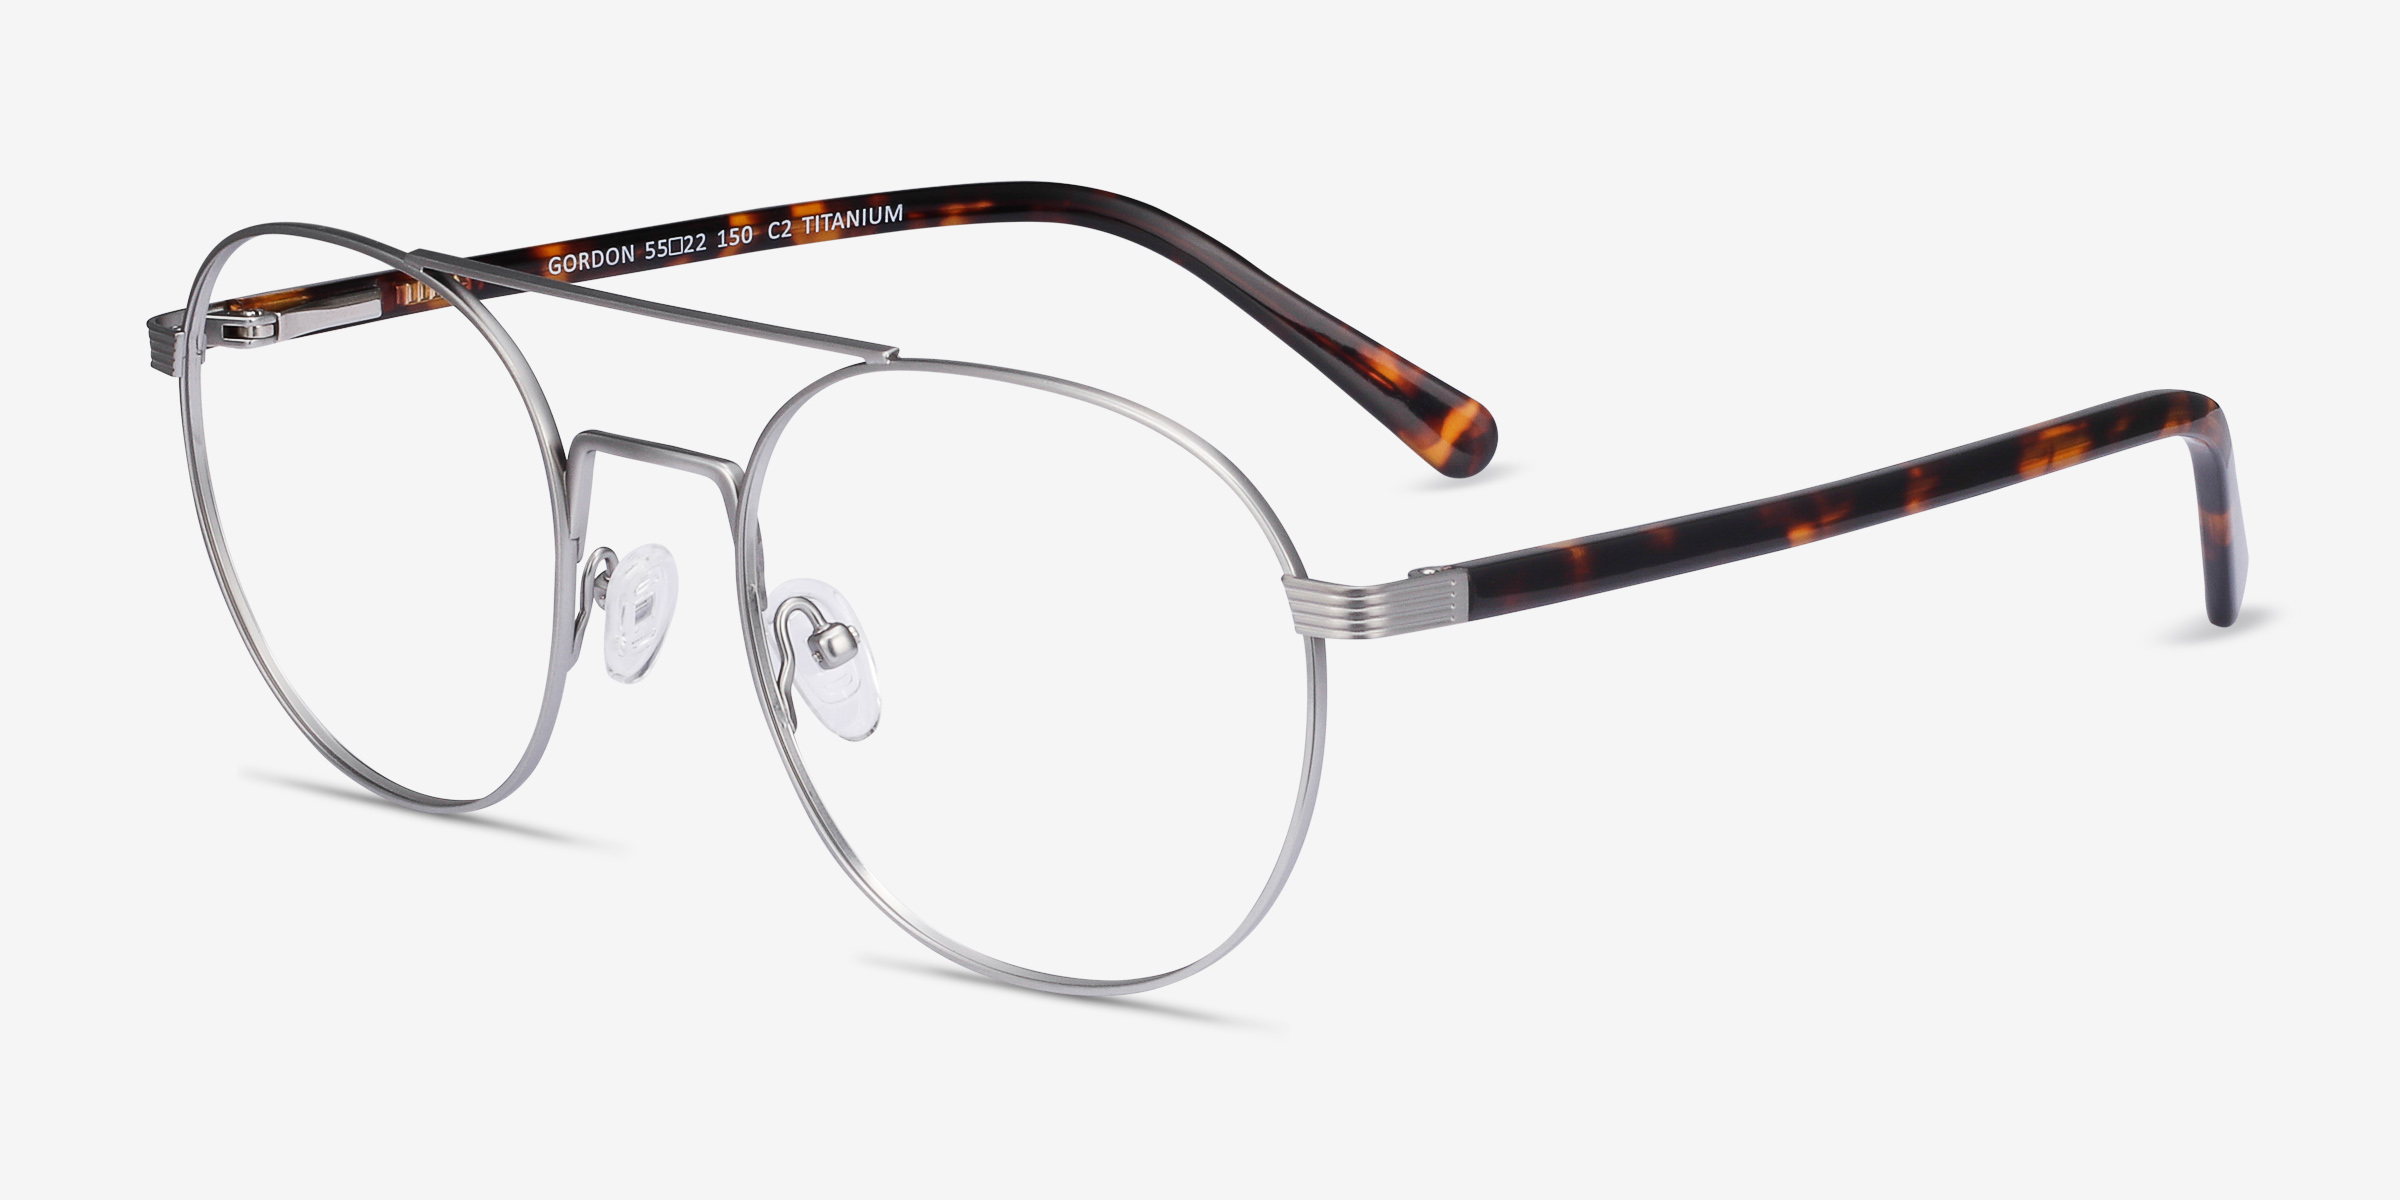 Gordon Aviator Silver Glasses for Men | Eyebuydirect